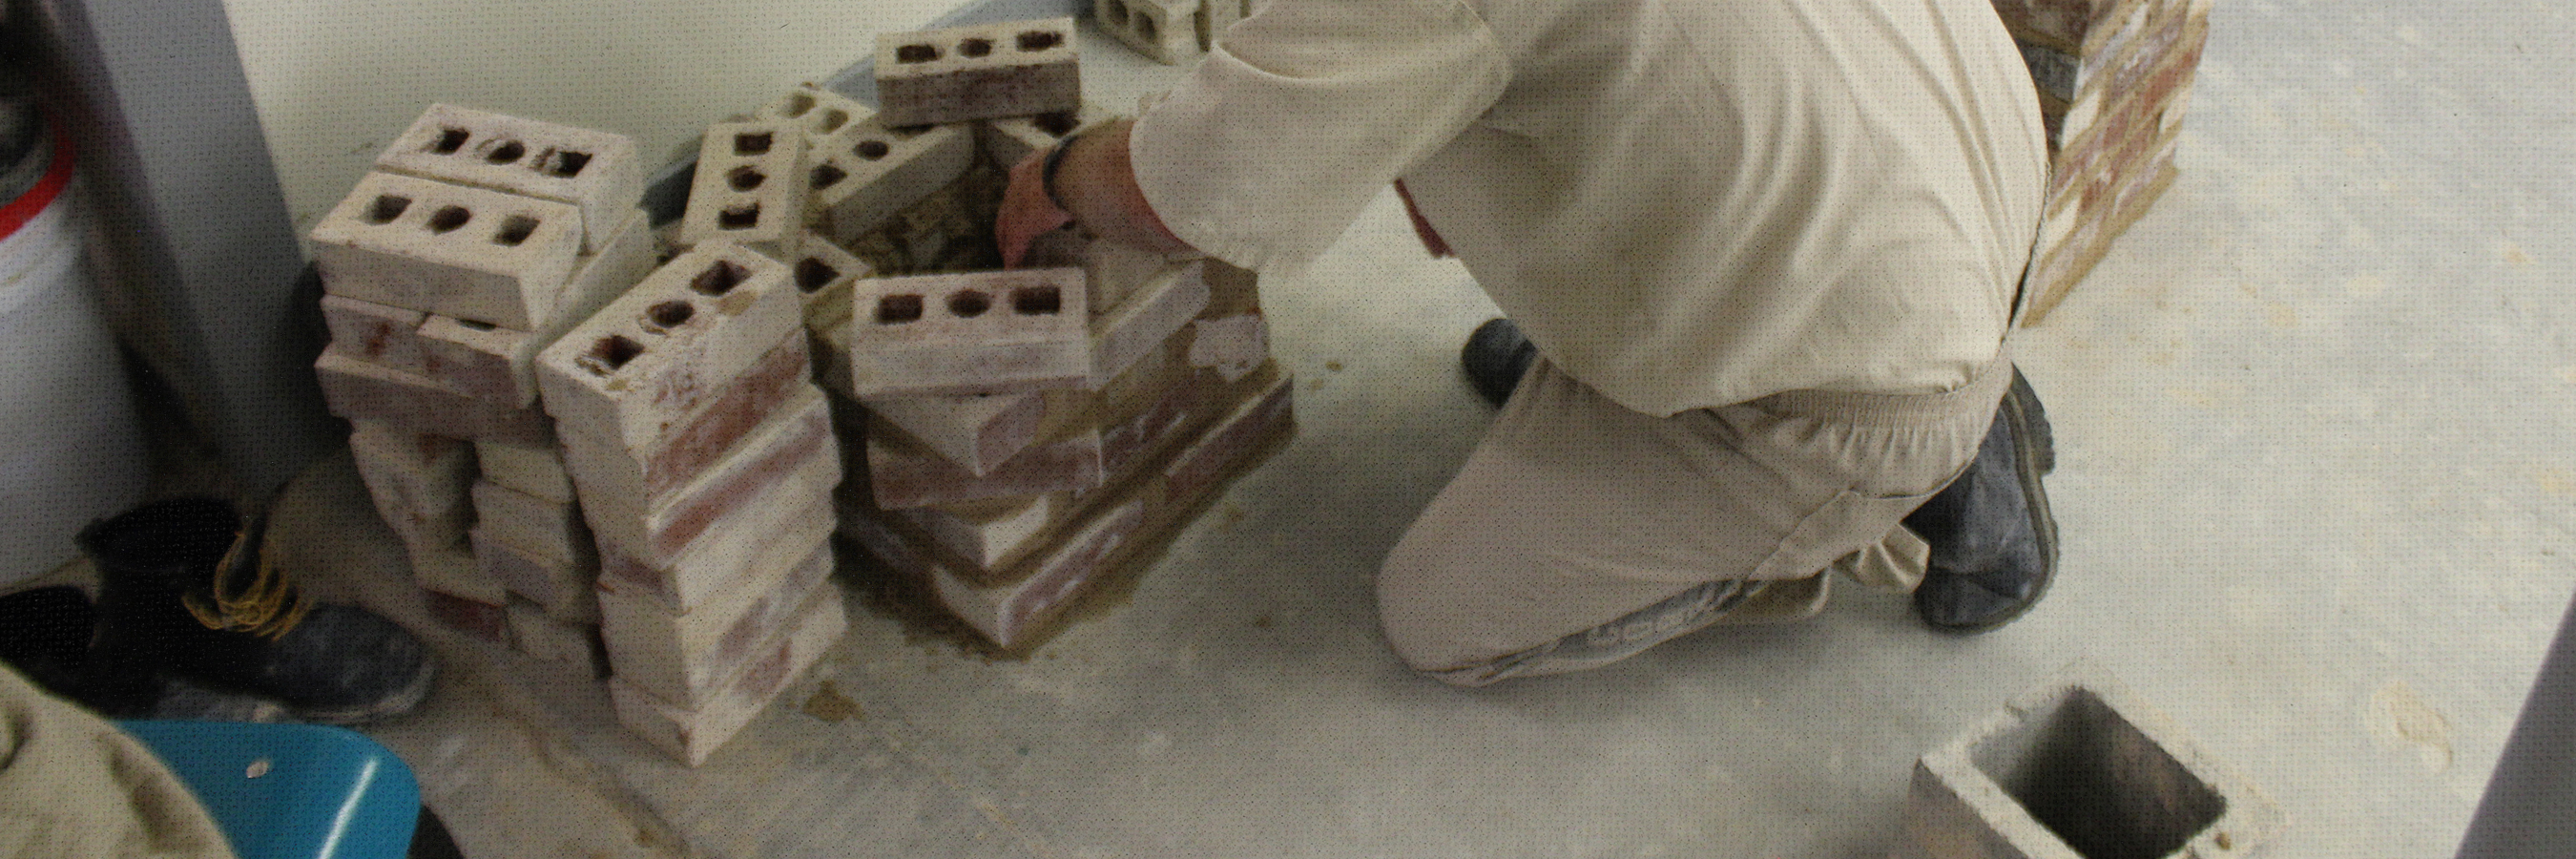 Inmate Laying Bricks